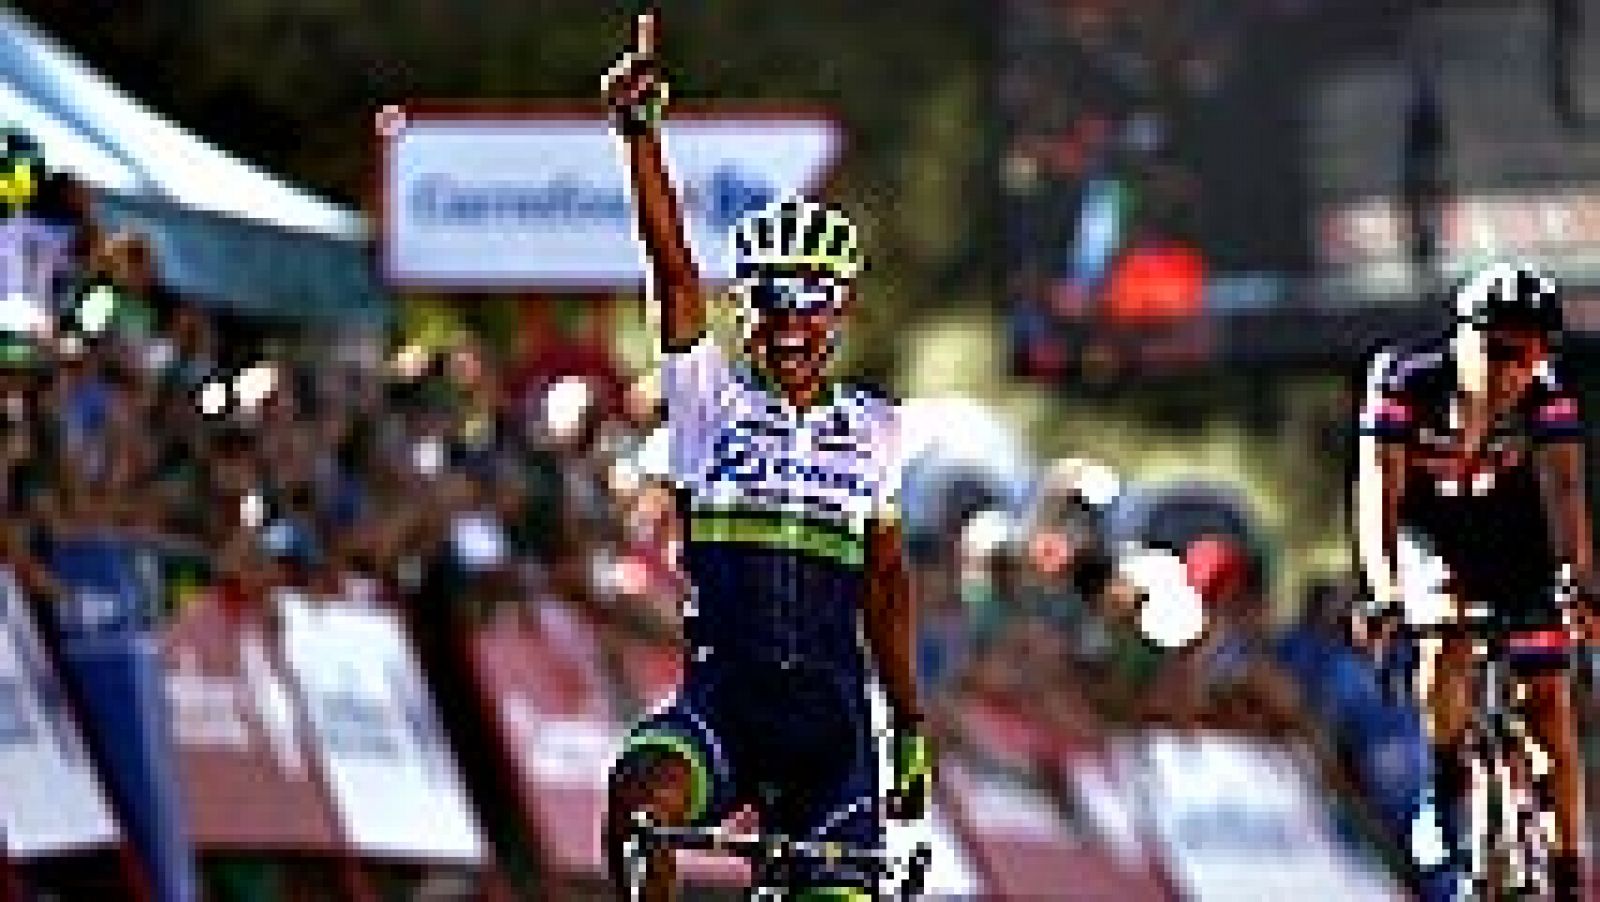 El colombiano Esteban Chaves (Orica) se enfundó con todos los honores el primer maillot rojo "auténtico" de la Vuelta tras conquistar la inédita meta de Caminito del Rey, donde los favoritos cruzaron los primeros golpes.